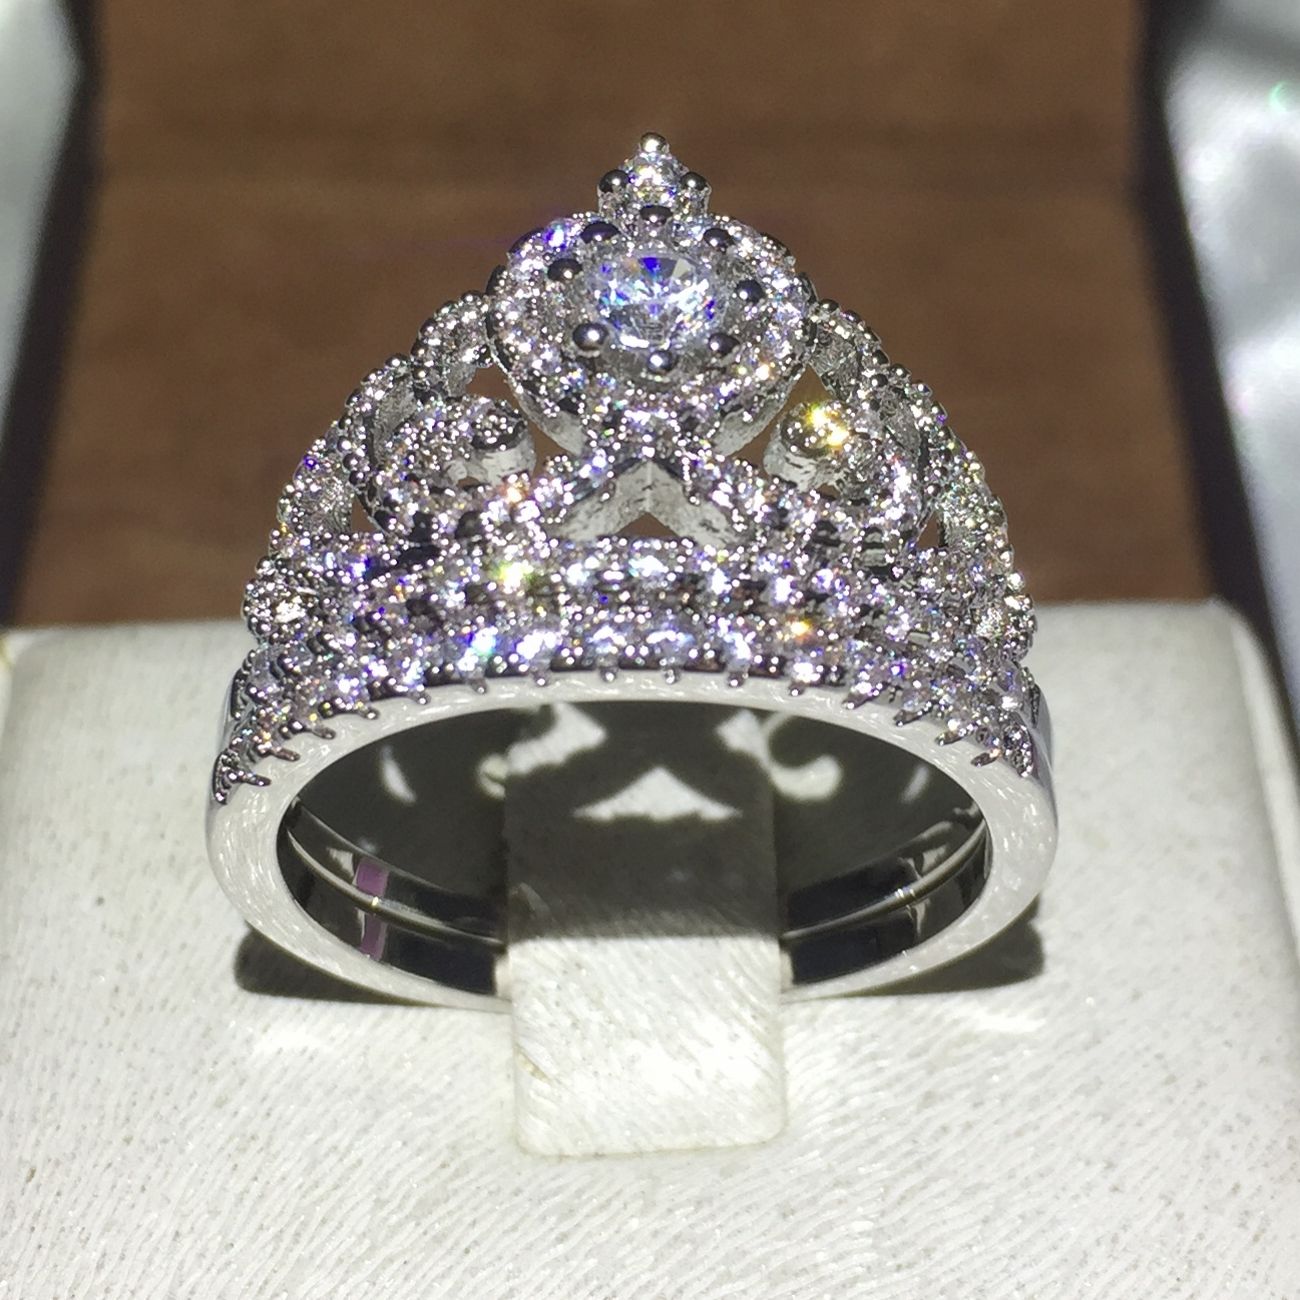 Frauen 925 Silber Überzogene Prinzessin Wedding Band Zirkon Crown Ring Schmuck^